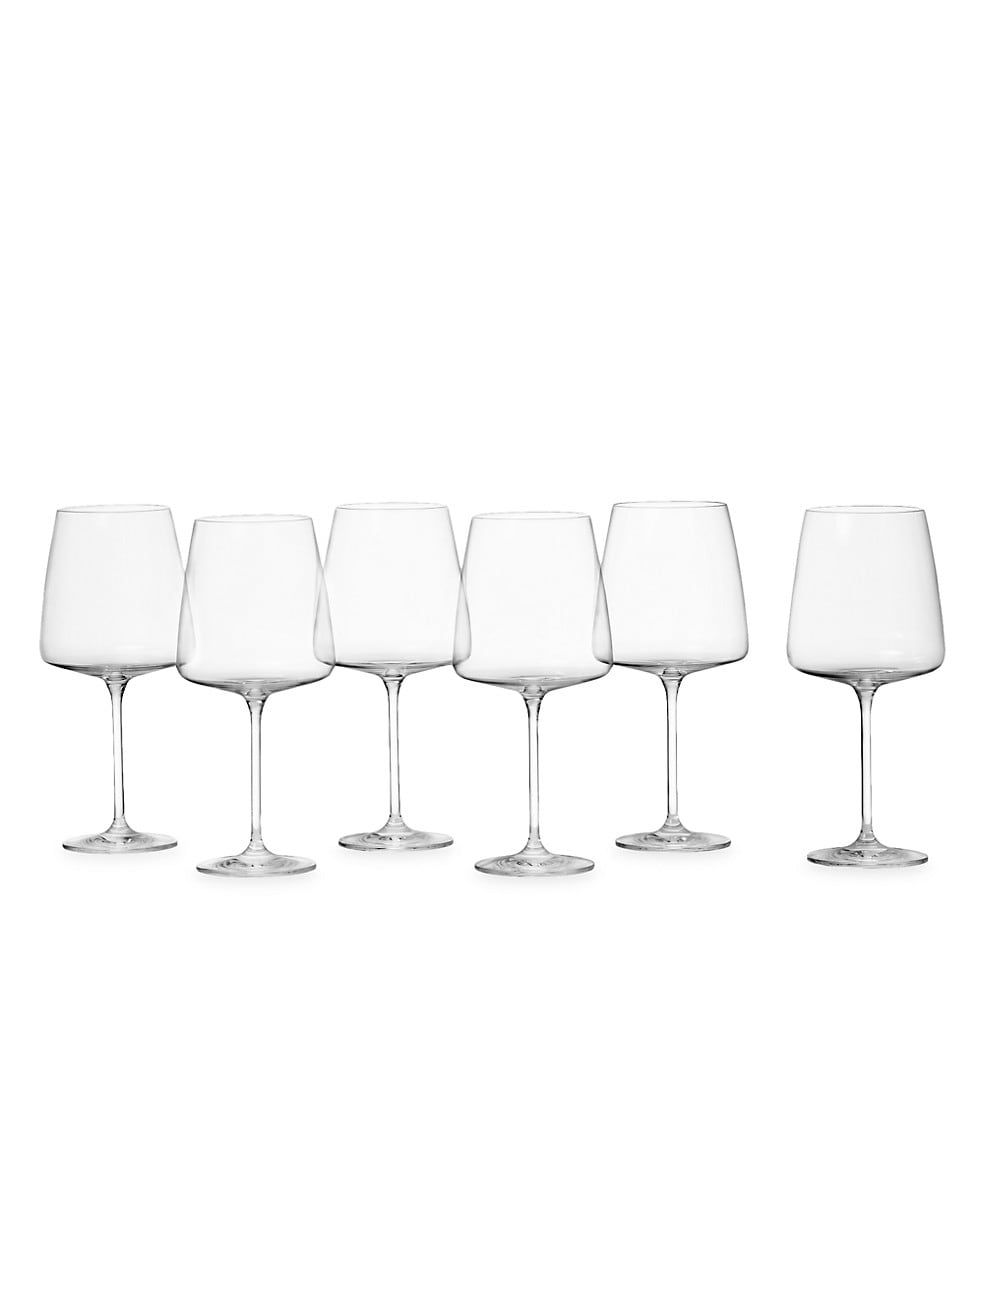 Sensa Schott Zwiesel® 6-Piece Burgundy Glass Set